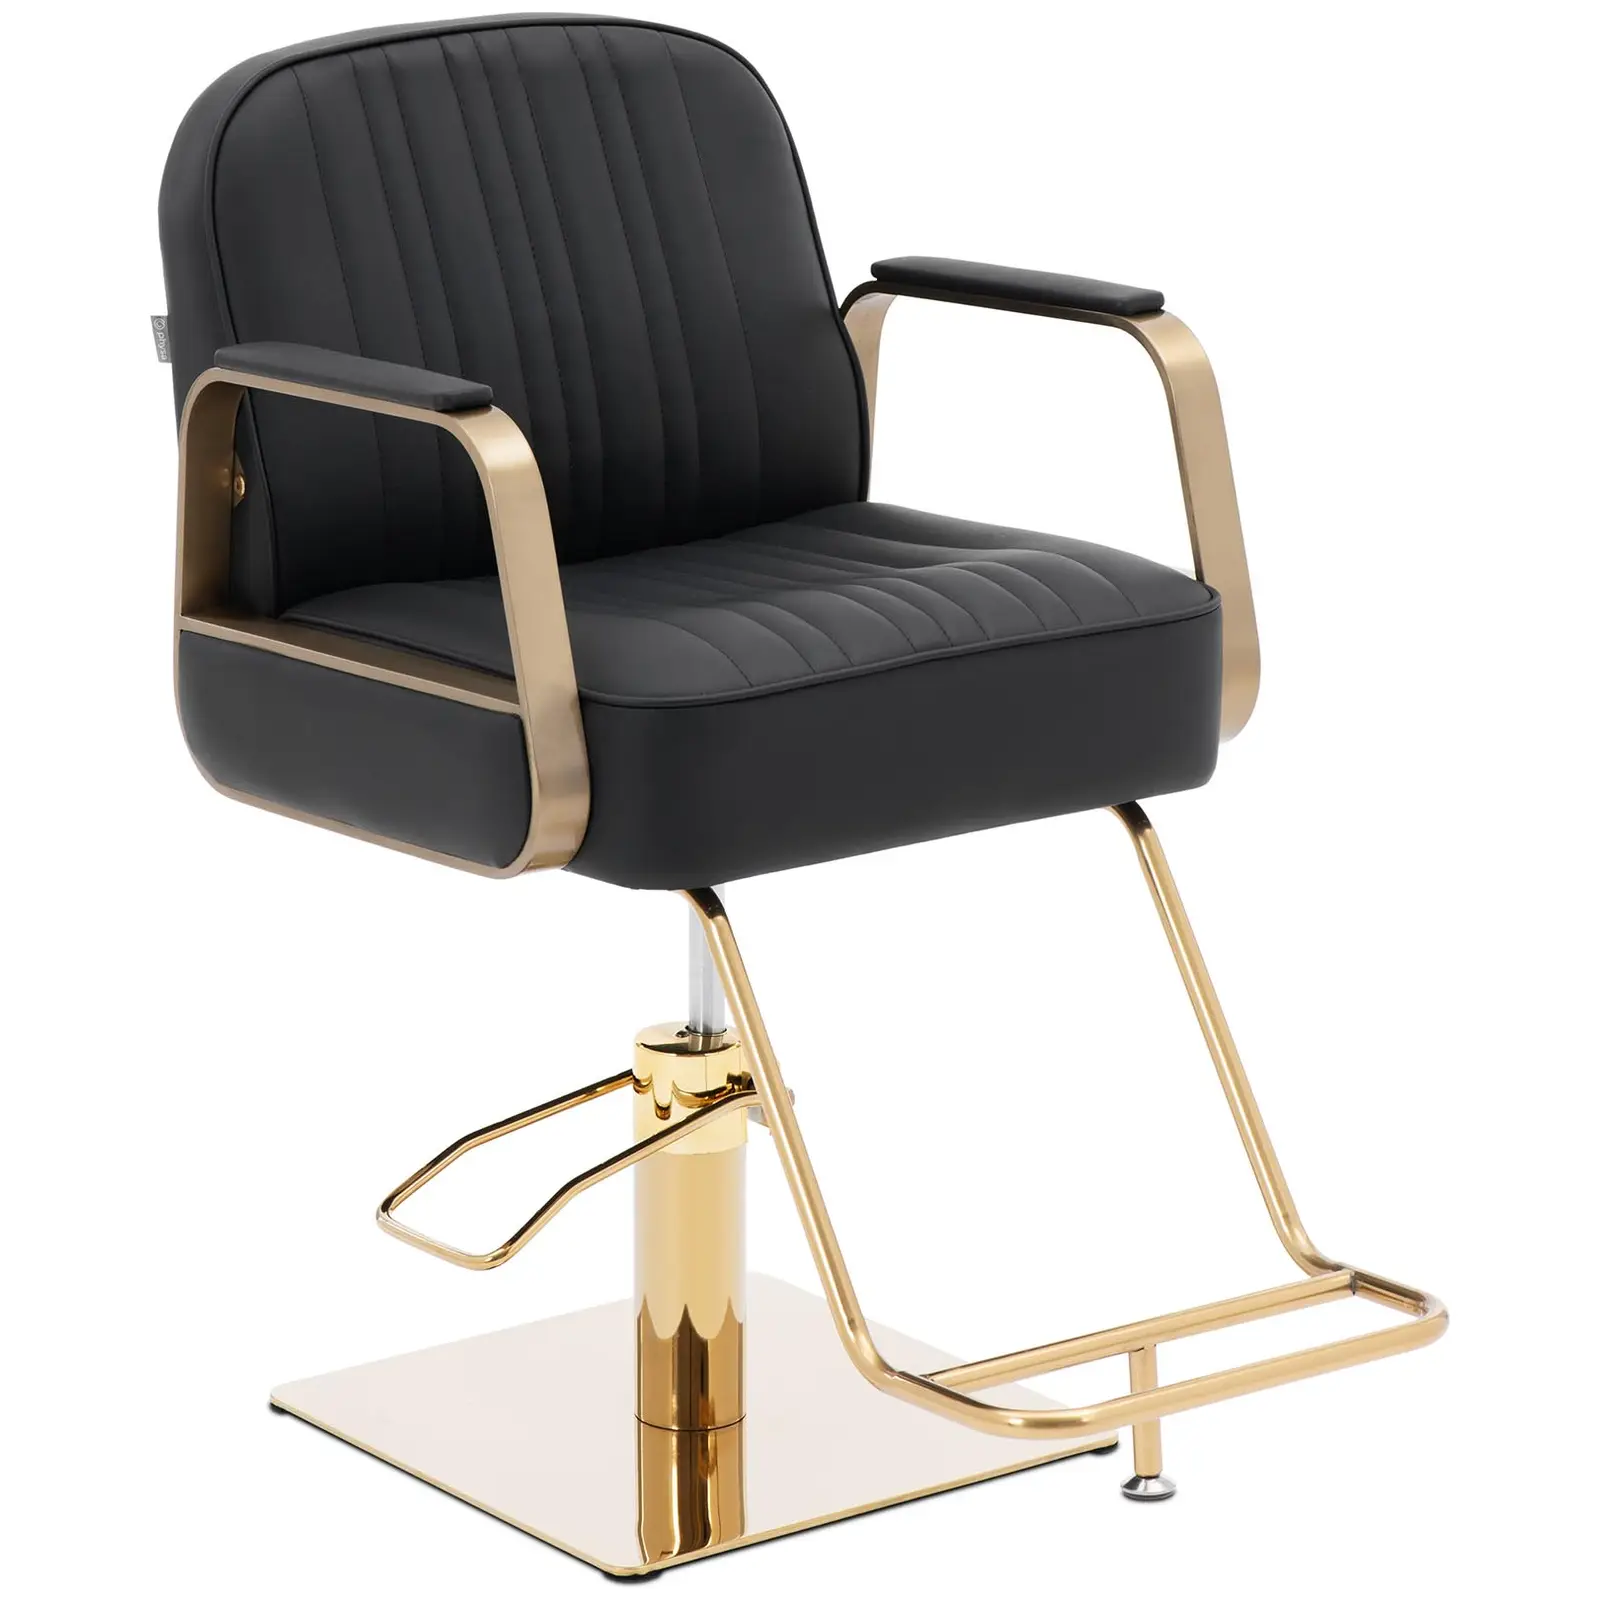 Fodrász szék lábtartóval - 920–1070 mm - max. 200 kg - fekete / arany